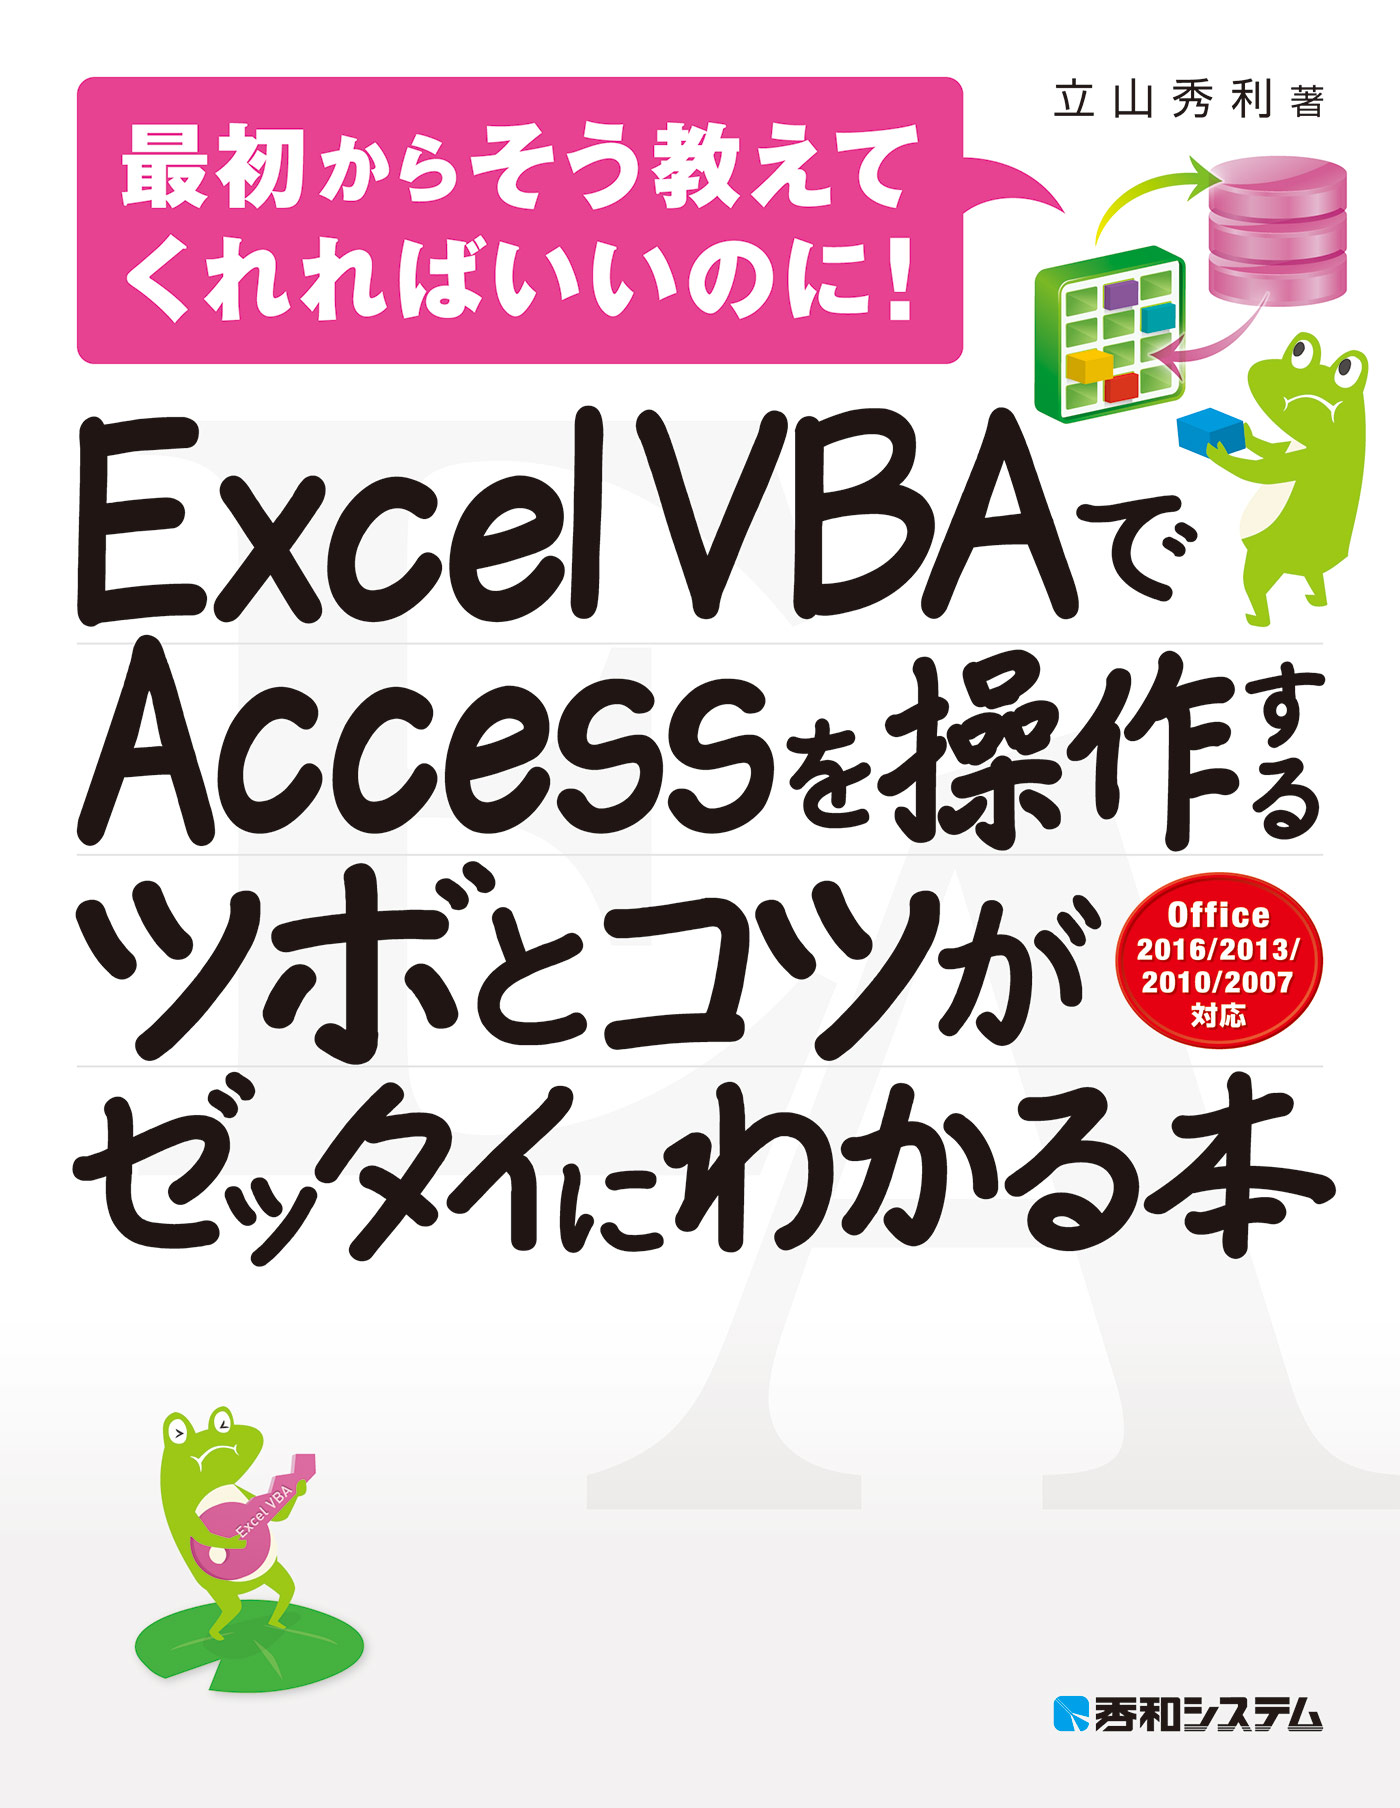 Excel VBAのプログラミングのツボとコツがゼッタイにわかる本 : 最初か